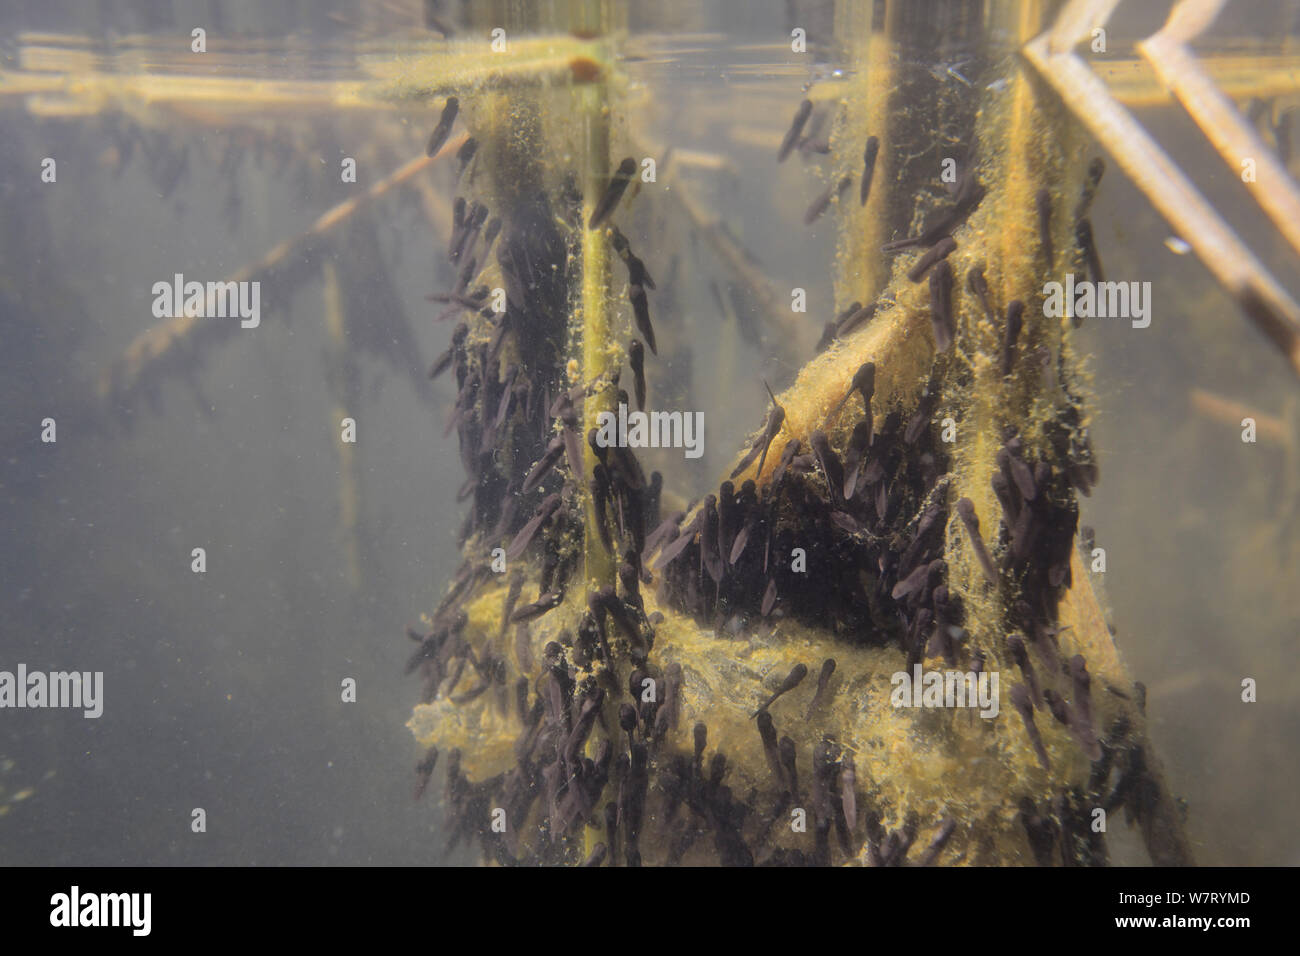 Kaulquappen junge grasfrosch (Rana temporaria) Fütterung auf grüne Algen an Reed stammt im Süßwasser-Teich, Wiltshire, UK, Mai. Stockfoto